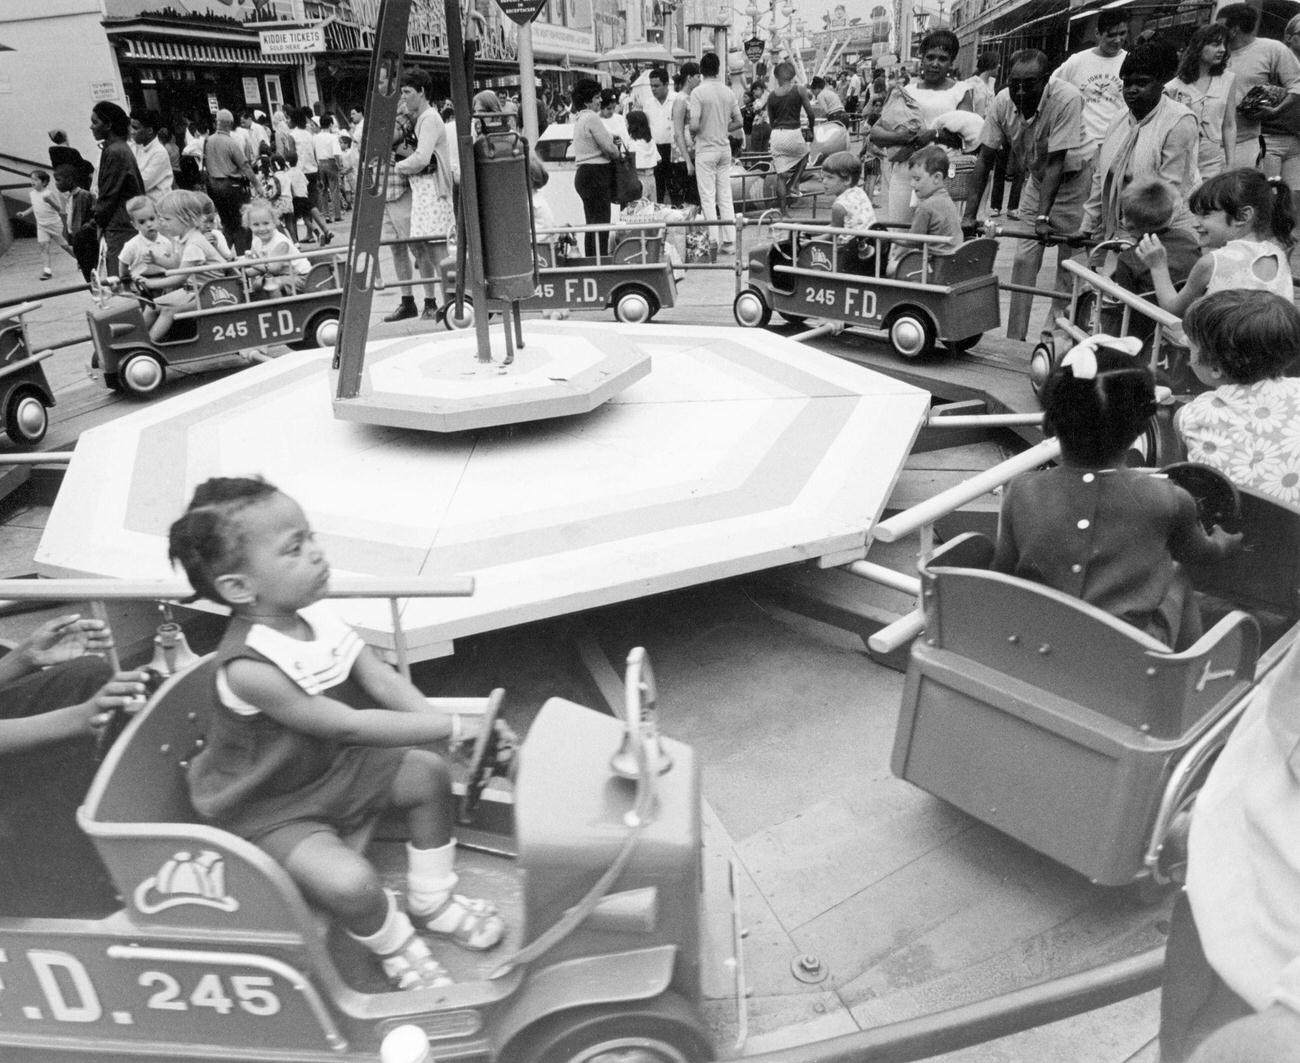 Children On Merry-Go-Round At Coney Island, 1969